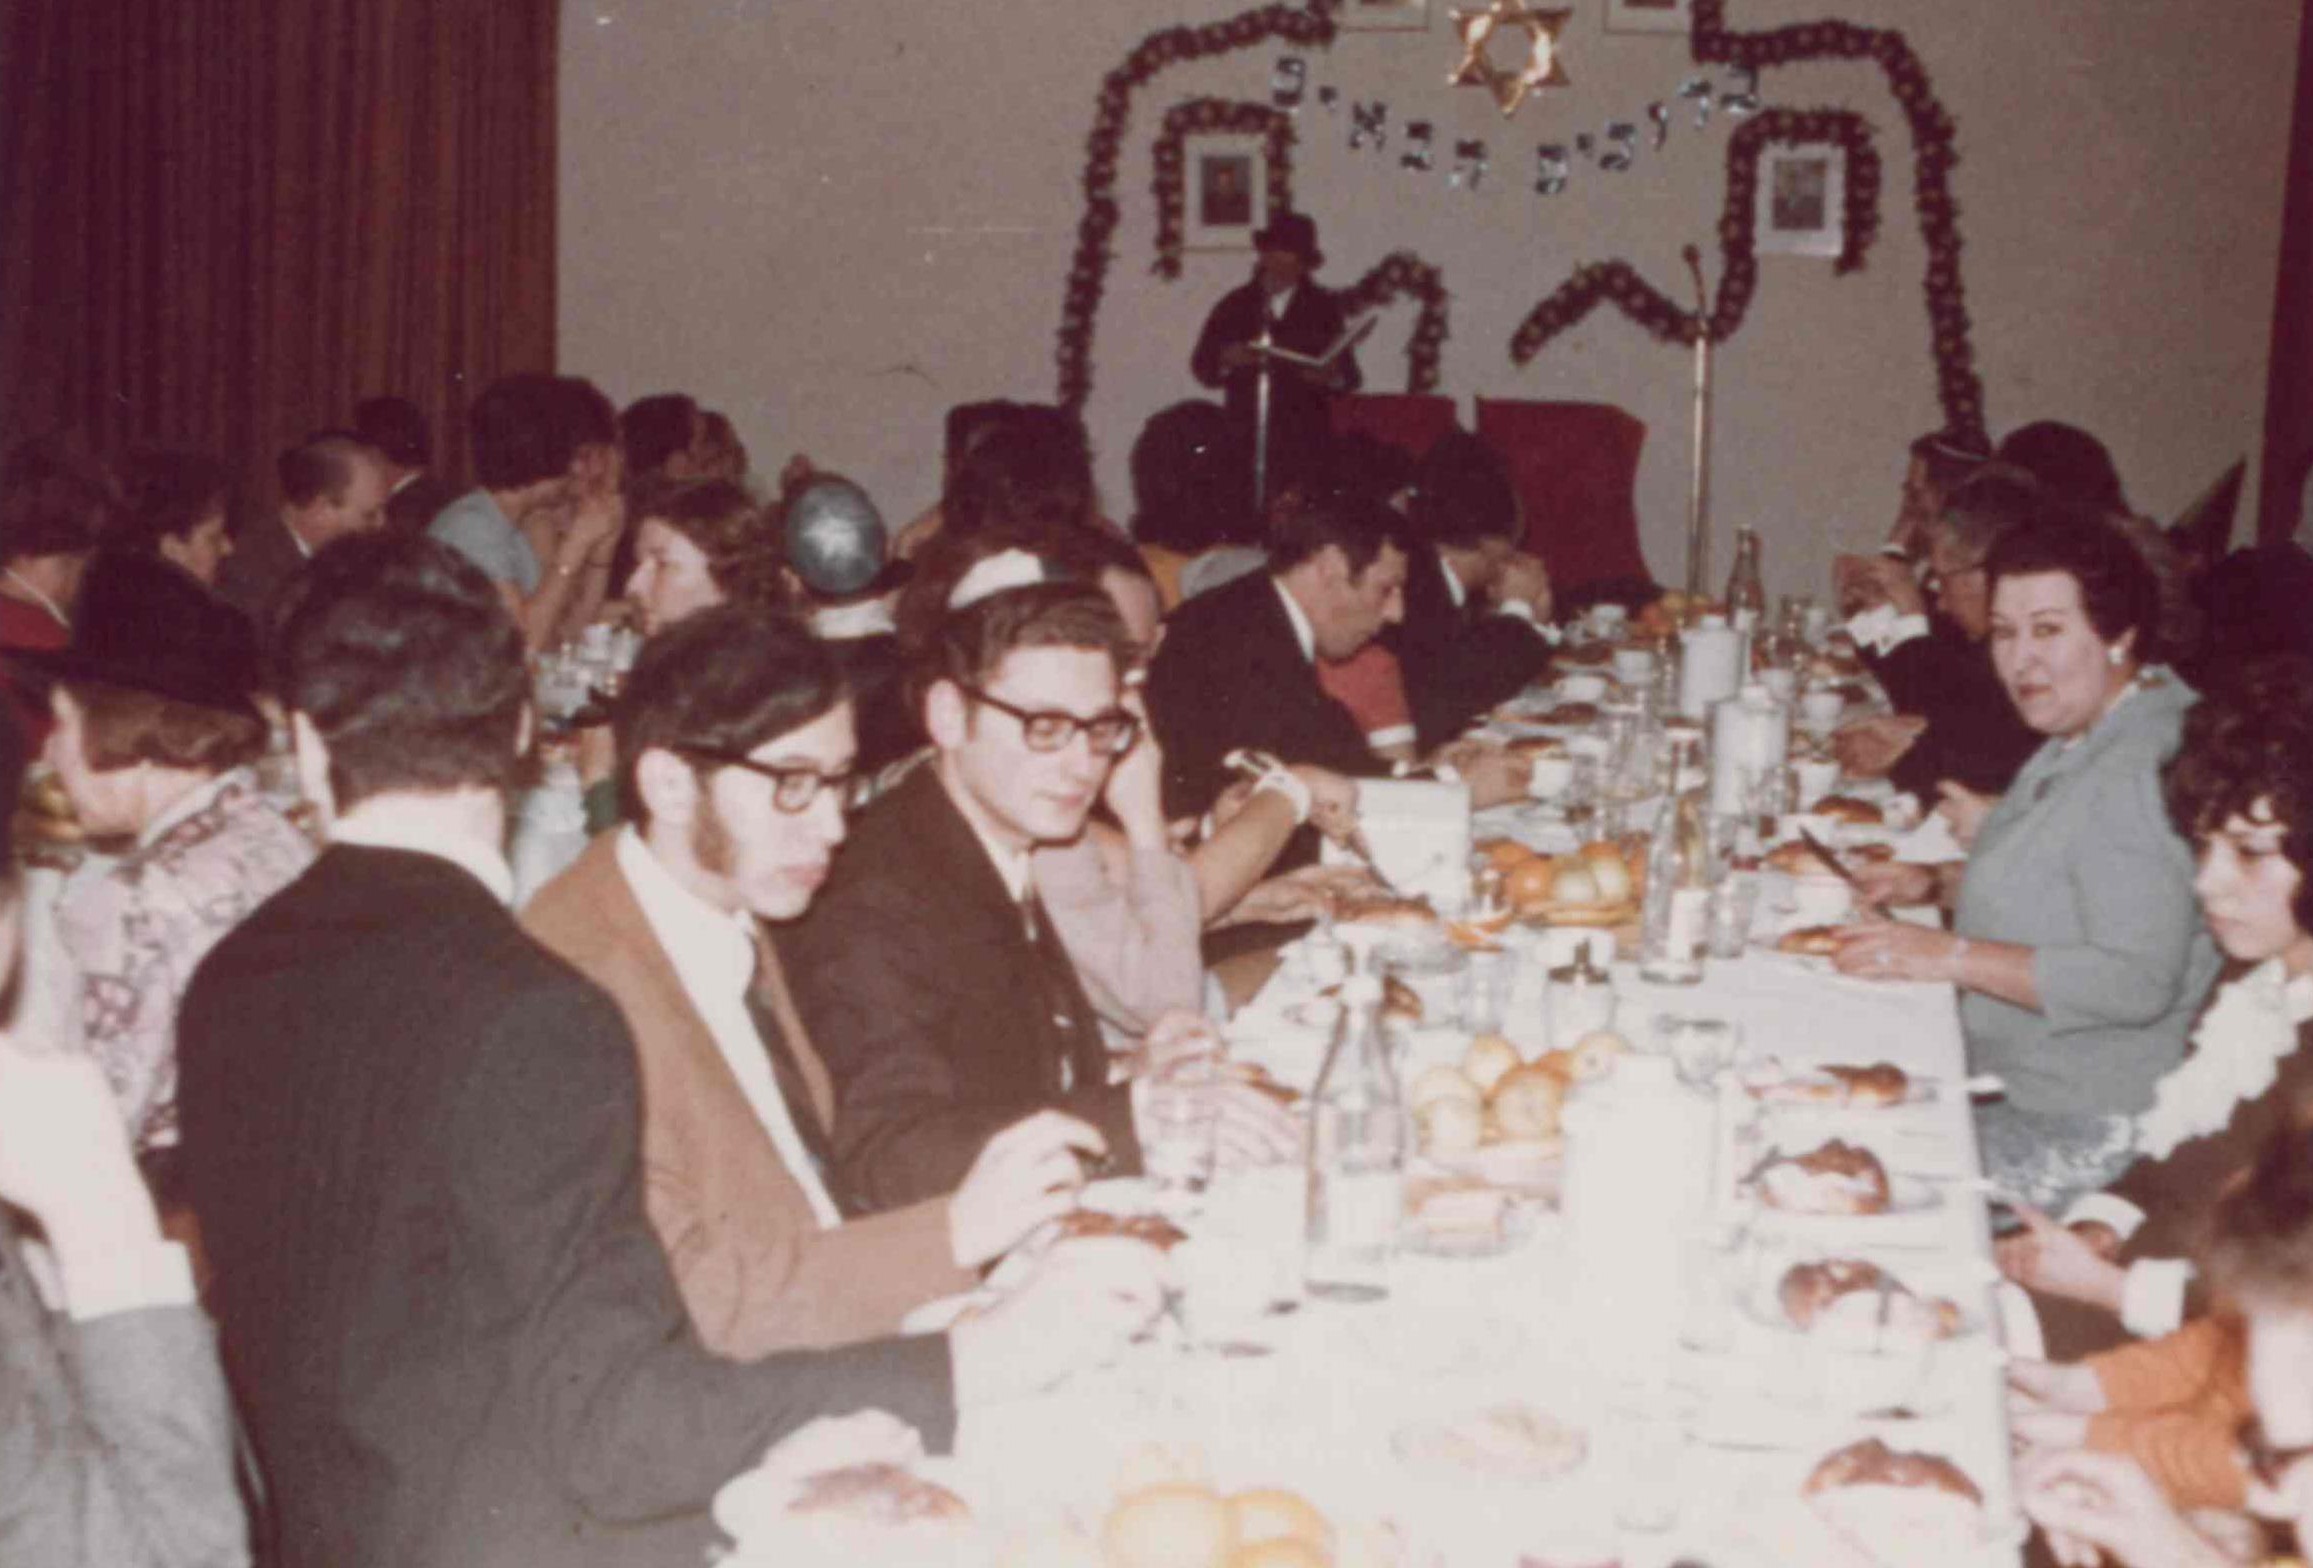 Événement communautaire dans les années 1970. Collection de la communauté juive de Wiesbaden